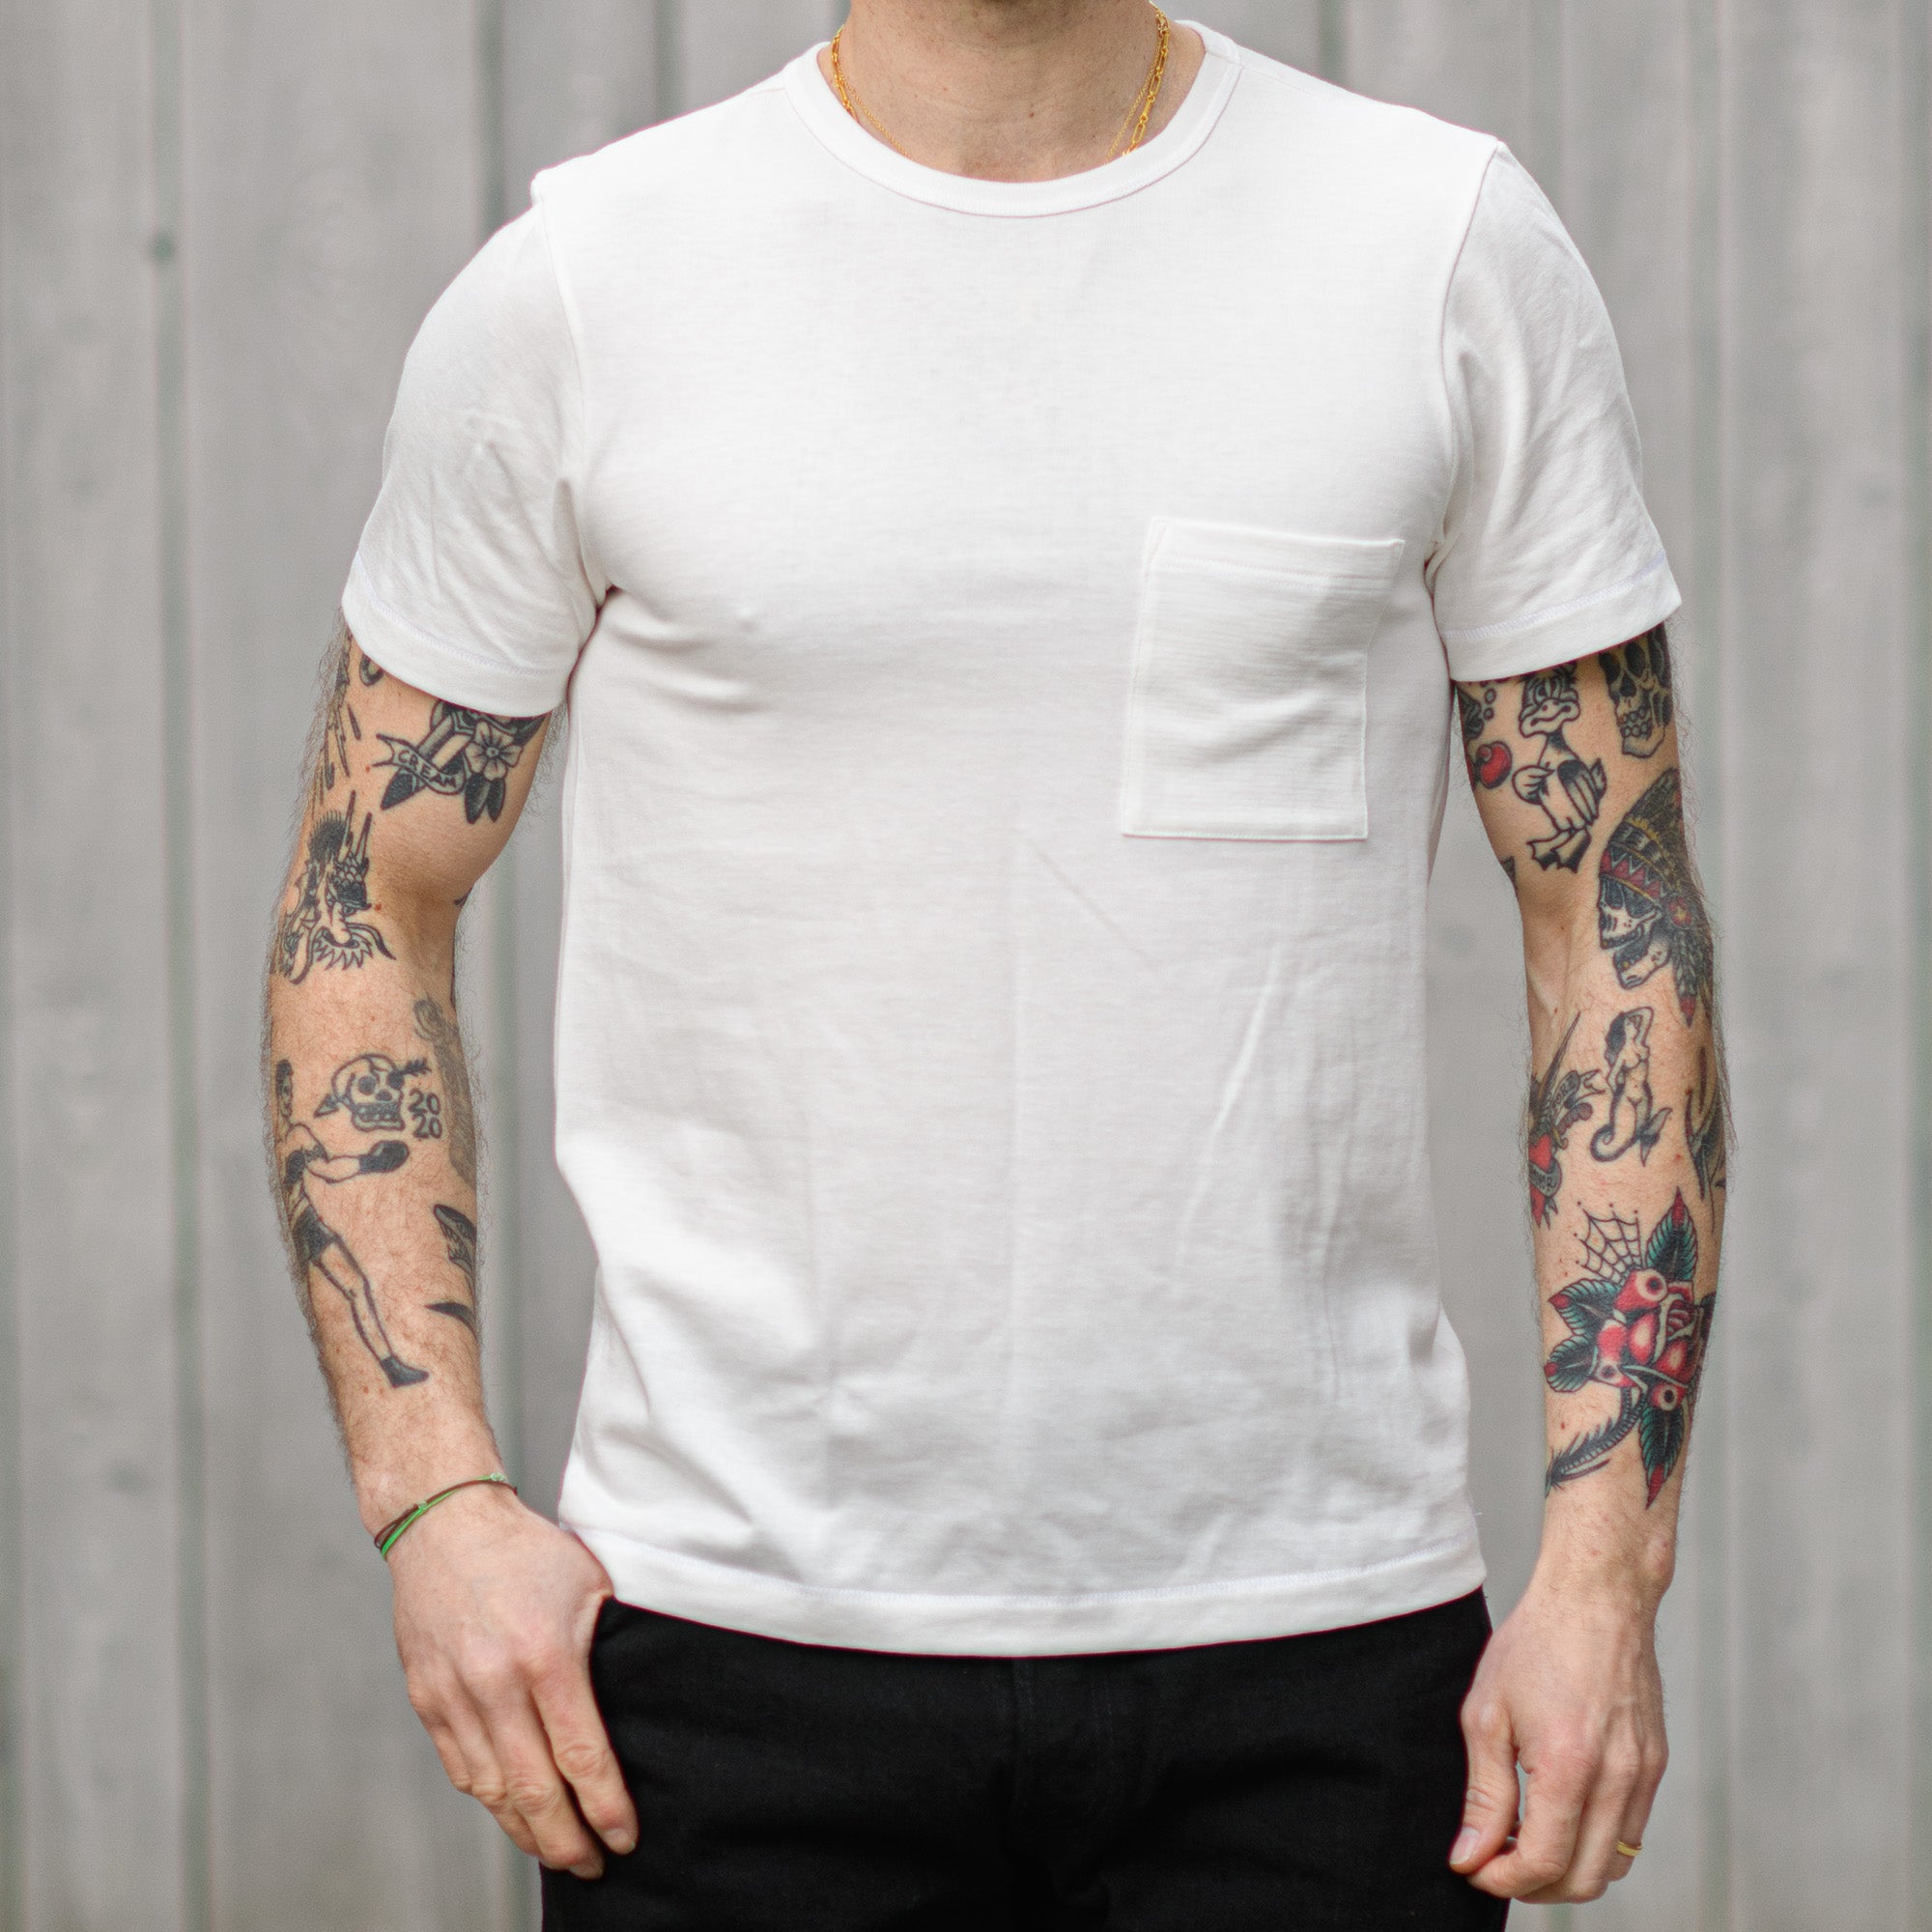 Limited Edition Store Schwanen Exclusive White Merz 215 – b (Europe) T-Shirt / Pocket